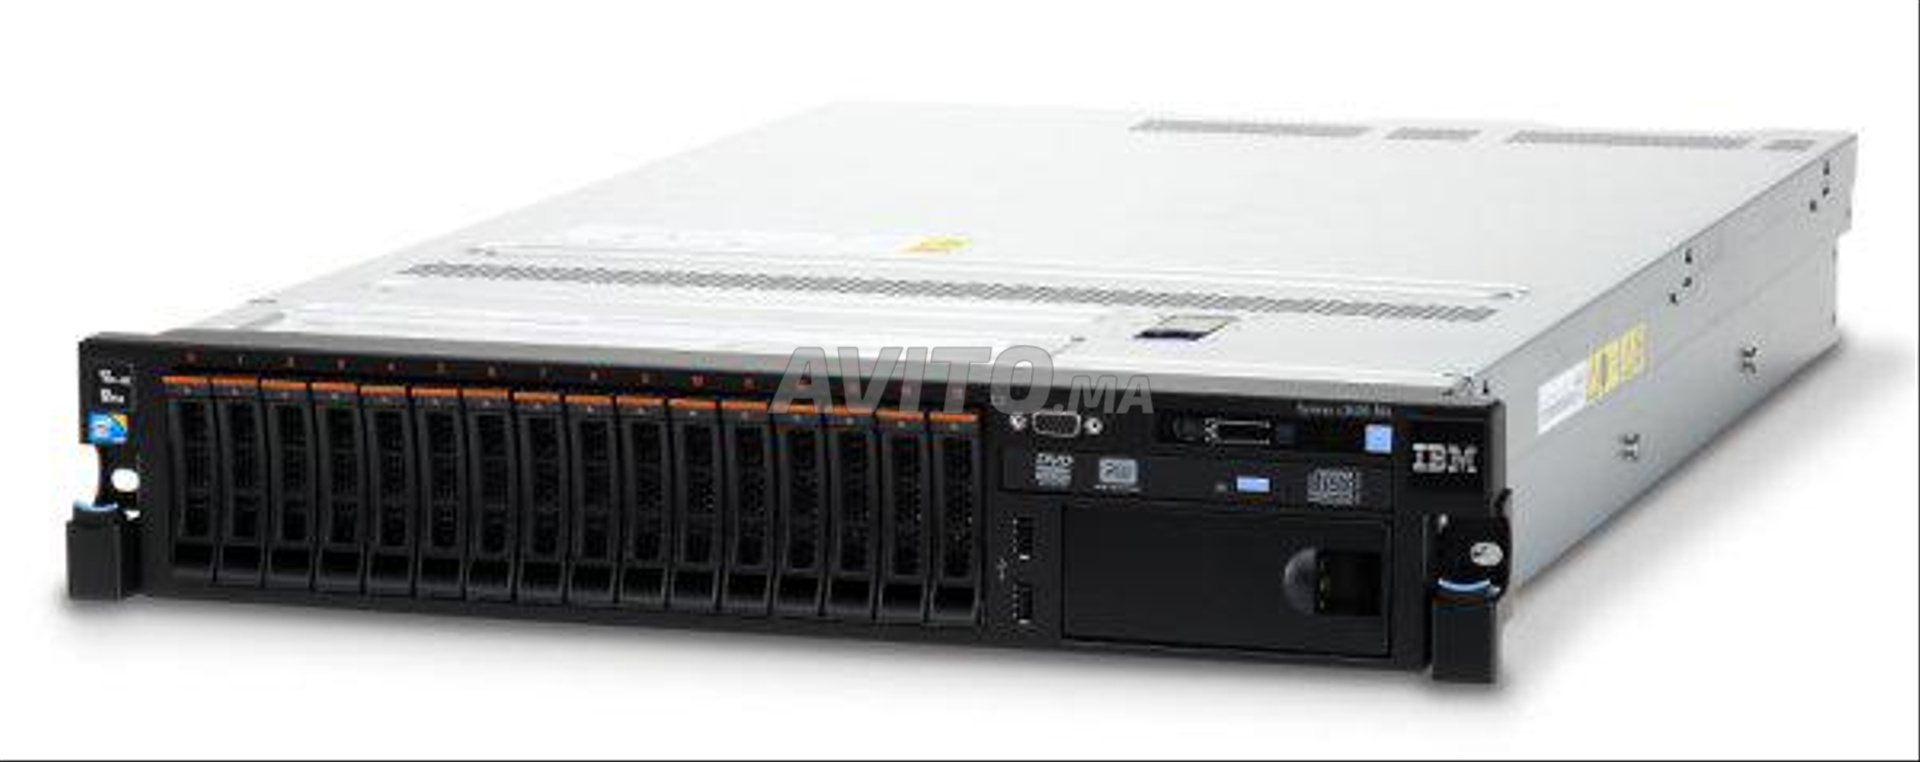 Serveurs IBM X3550 et 3650 M3 M4 - 1